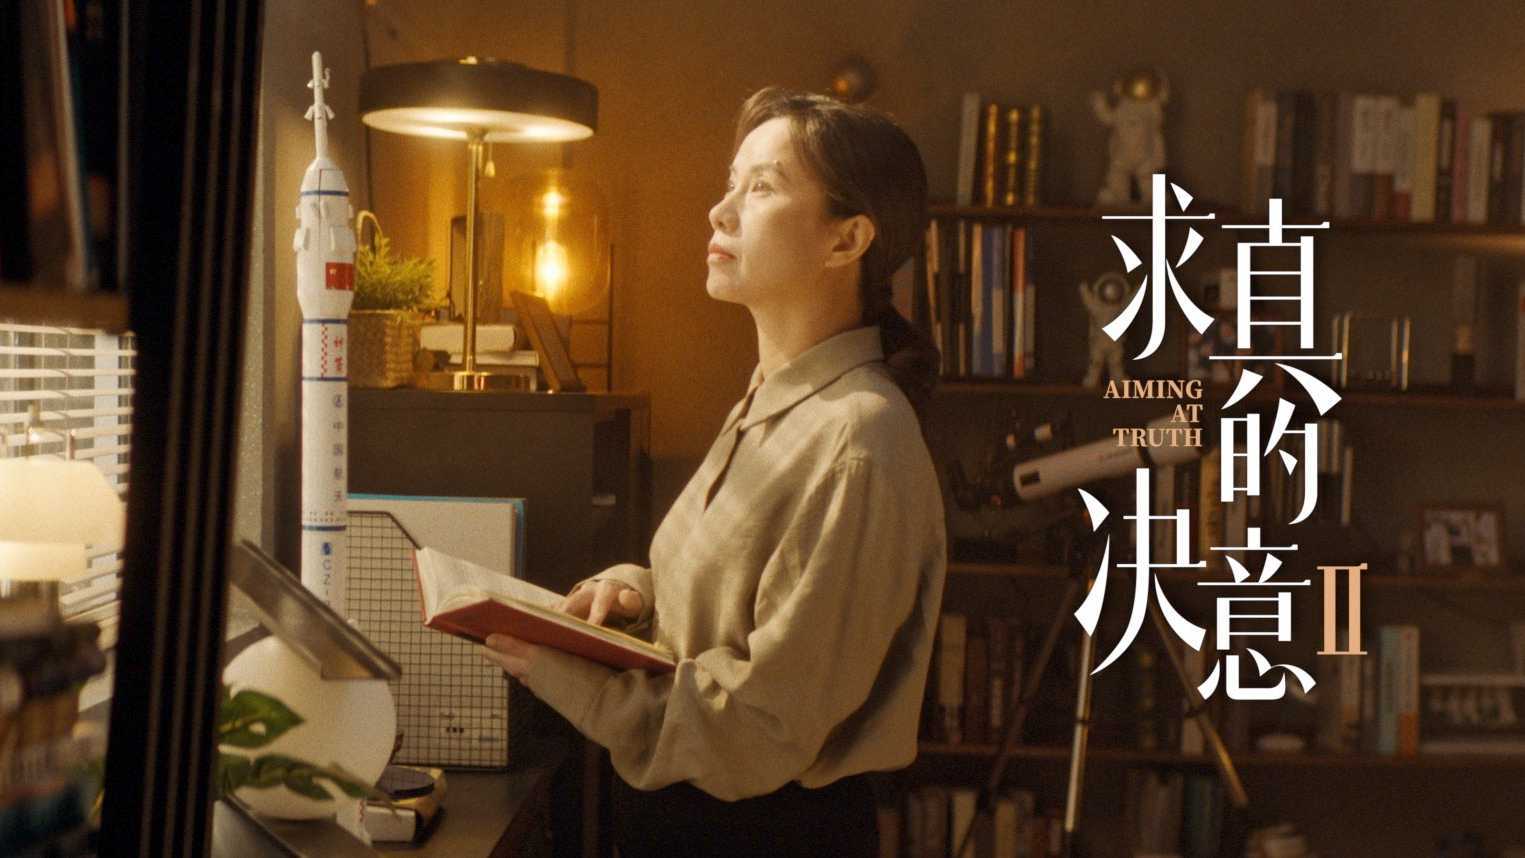 中国妇女报 x HBN 妇女节公益片《求真的决意Ⅱ》